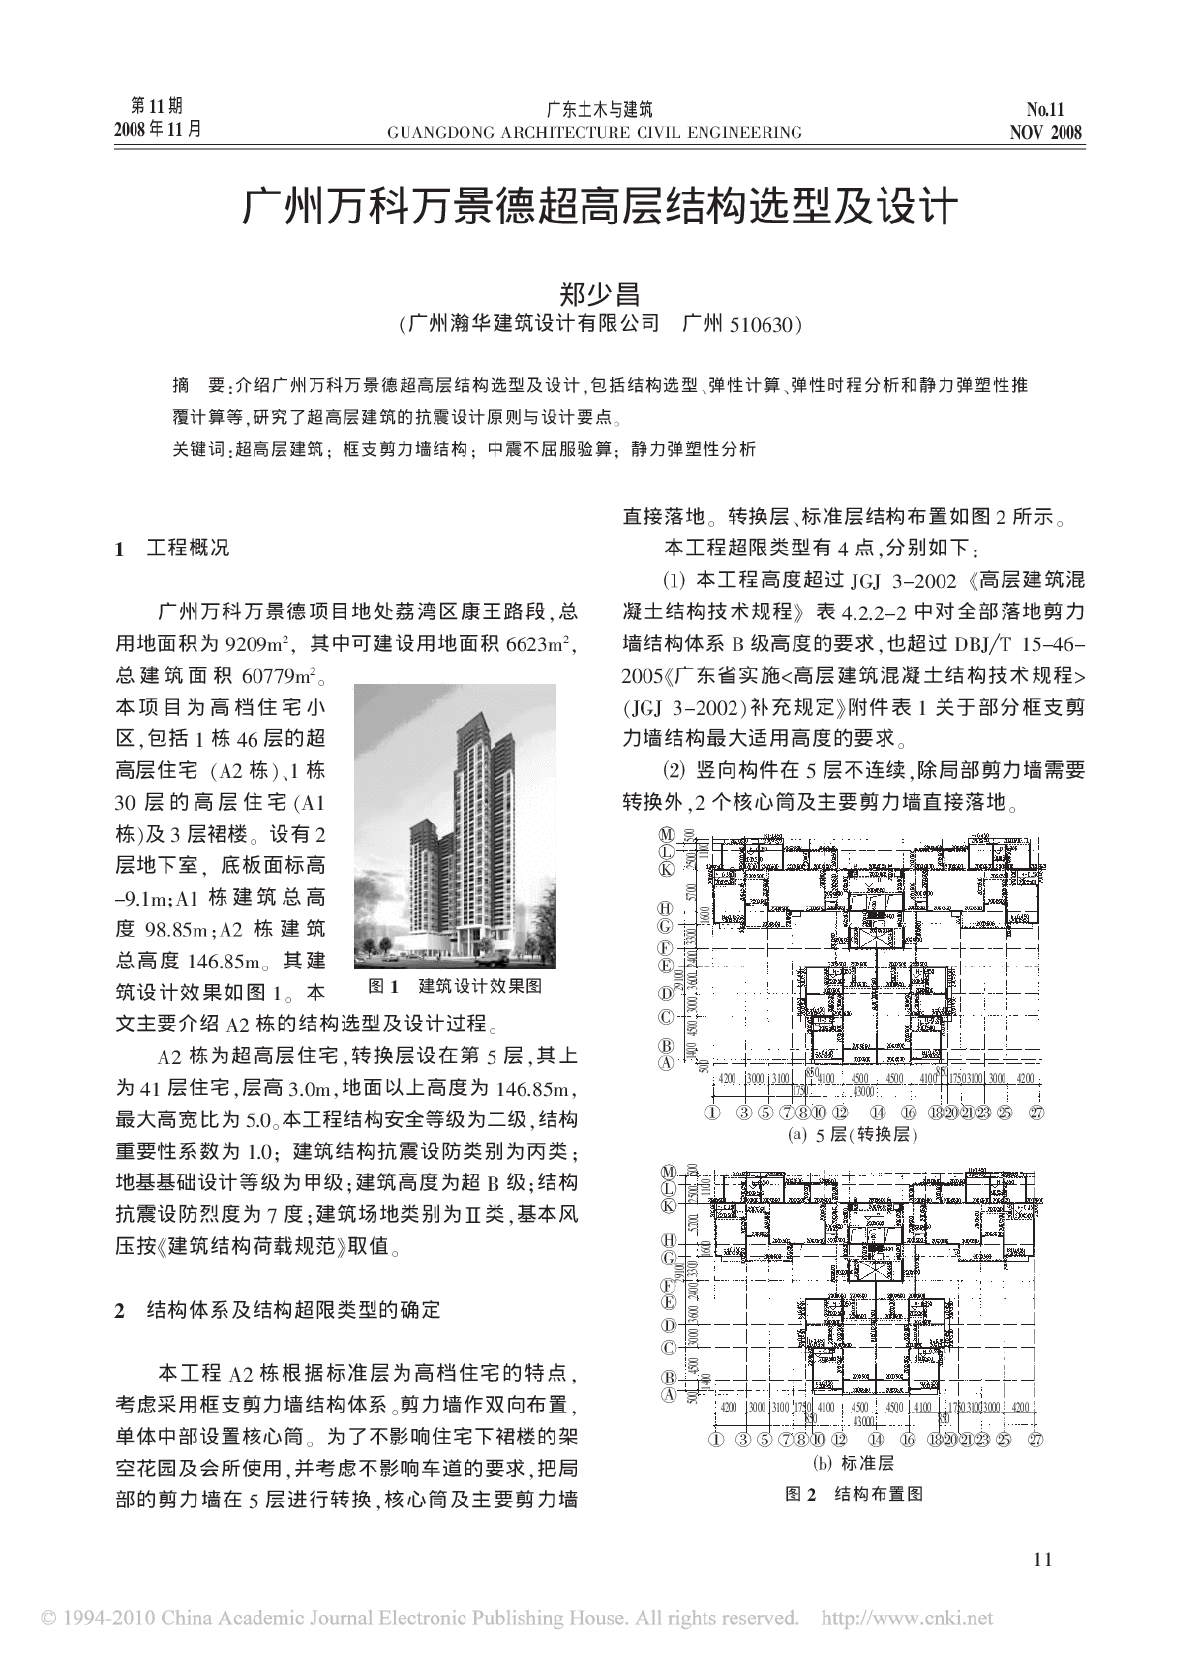 广州万科万景德超高层结构选型及设计